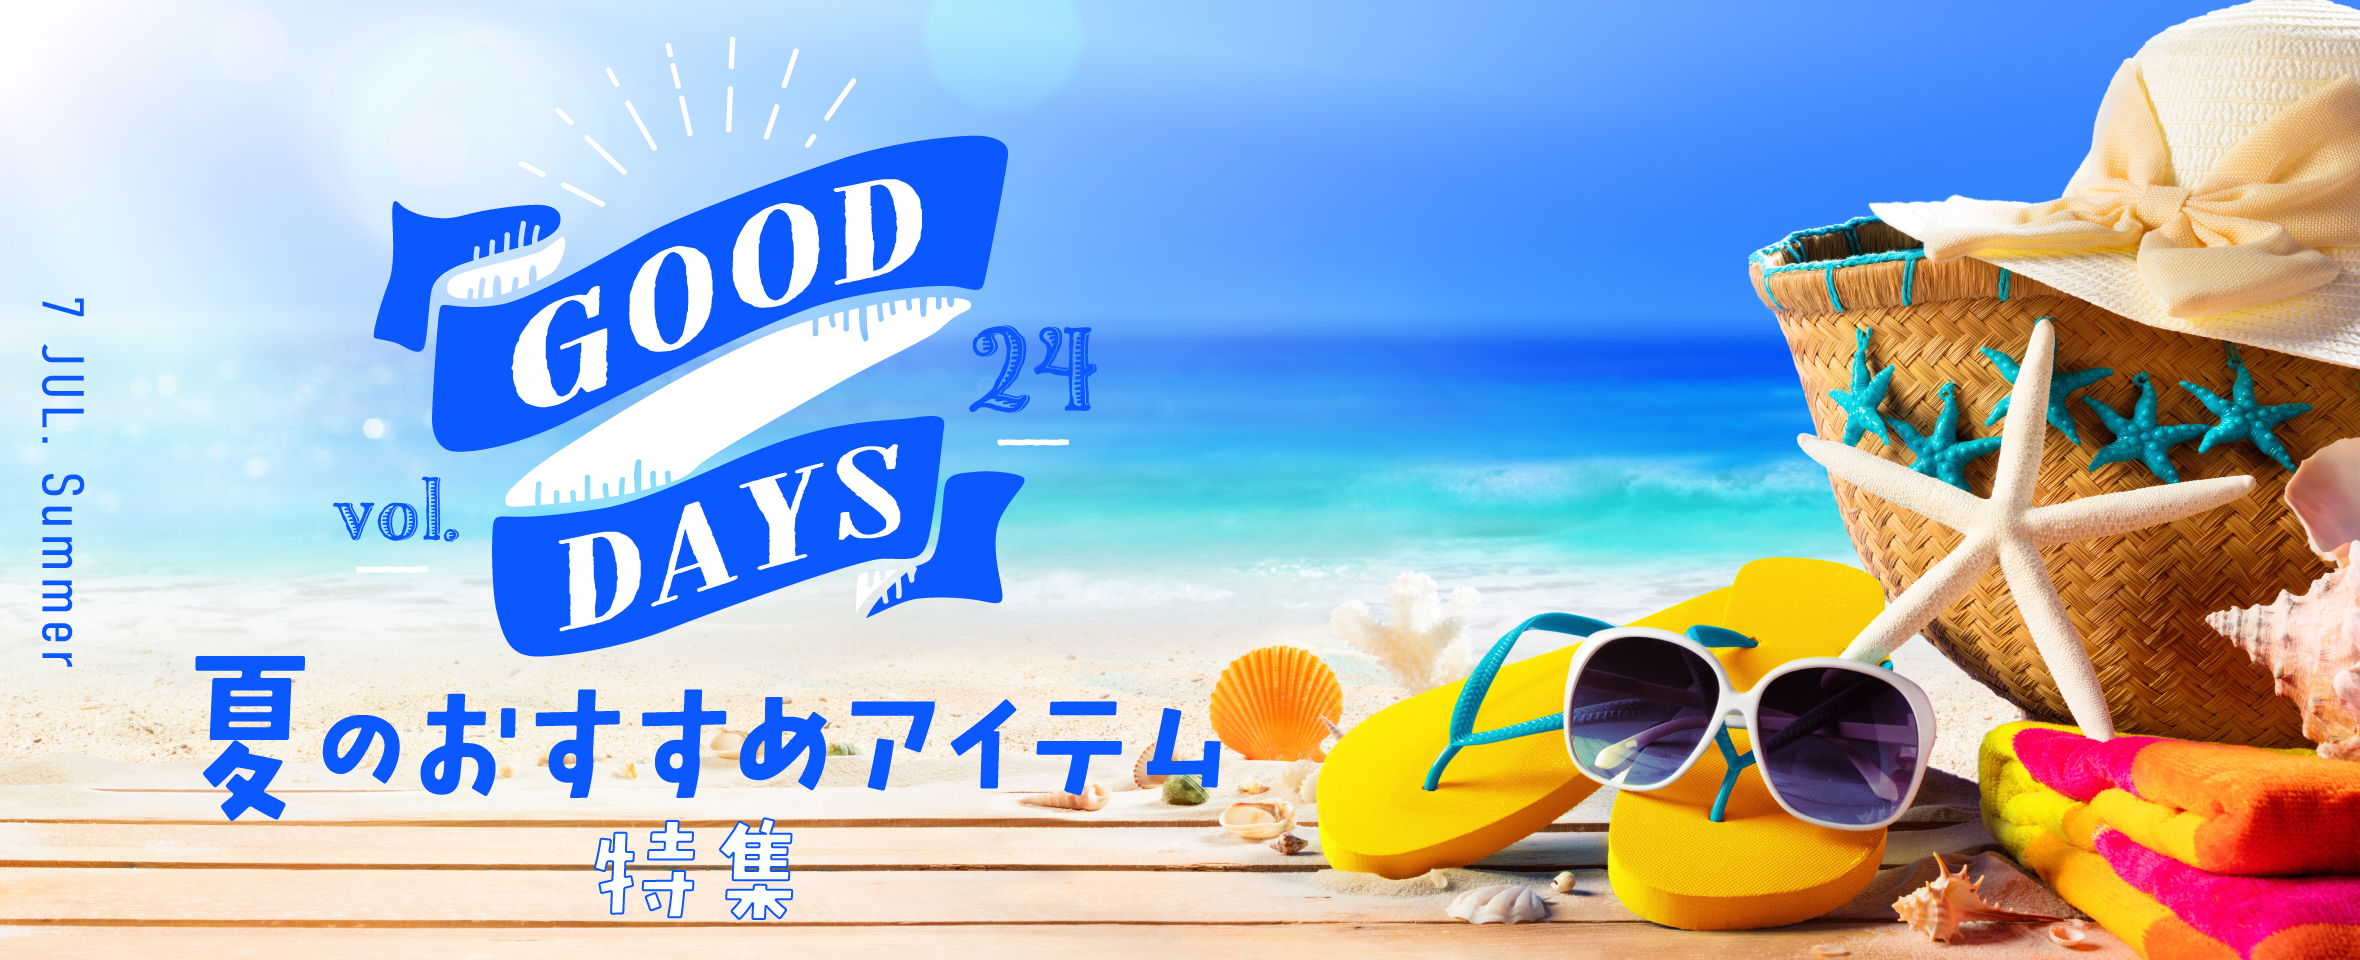 GOOD DAYS Vol.24 夏のおすすめアイテム 特集